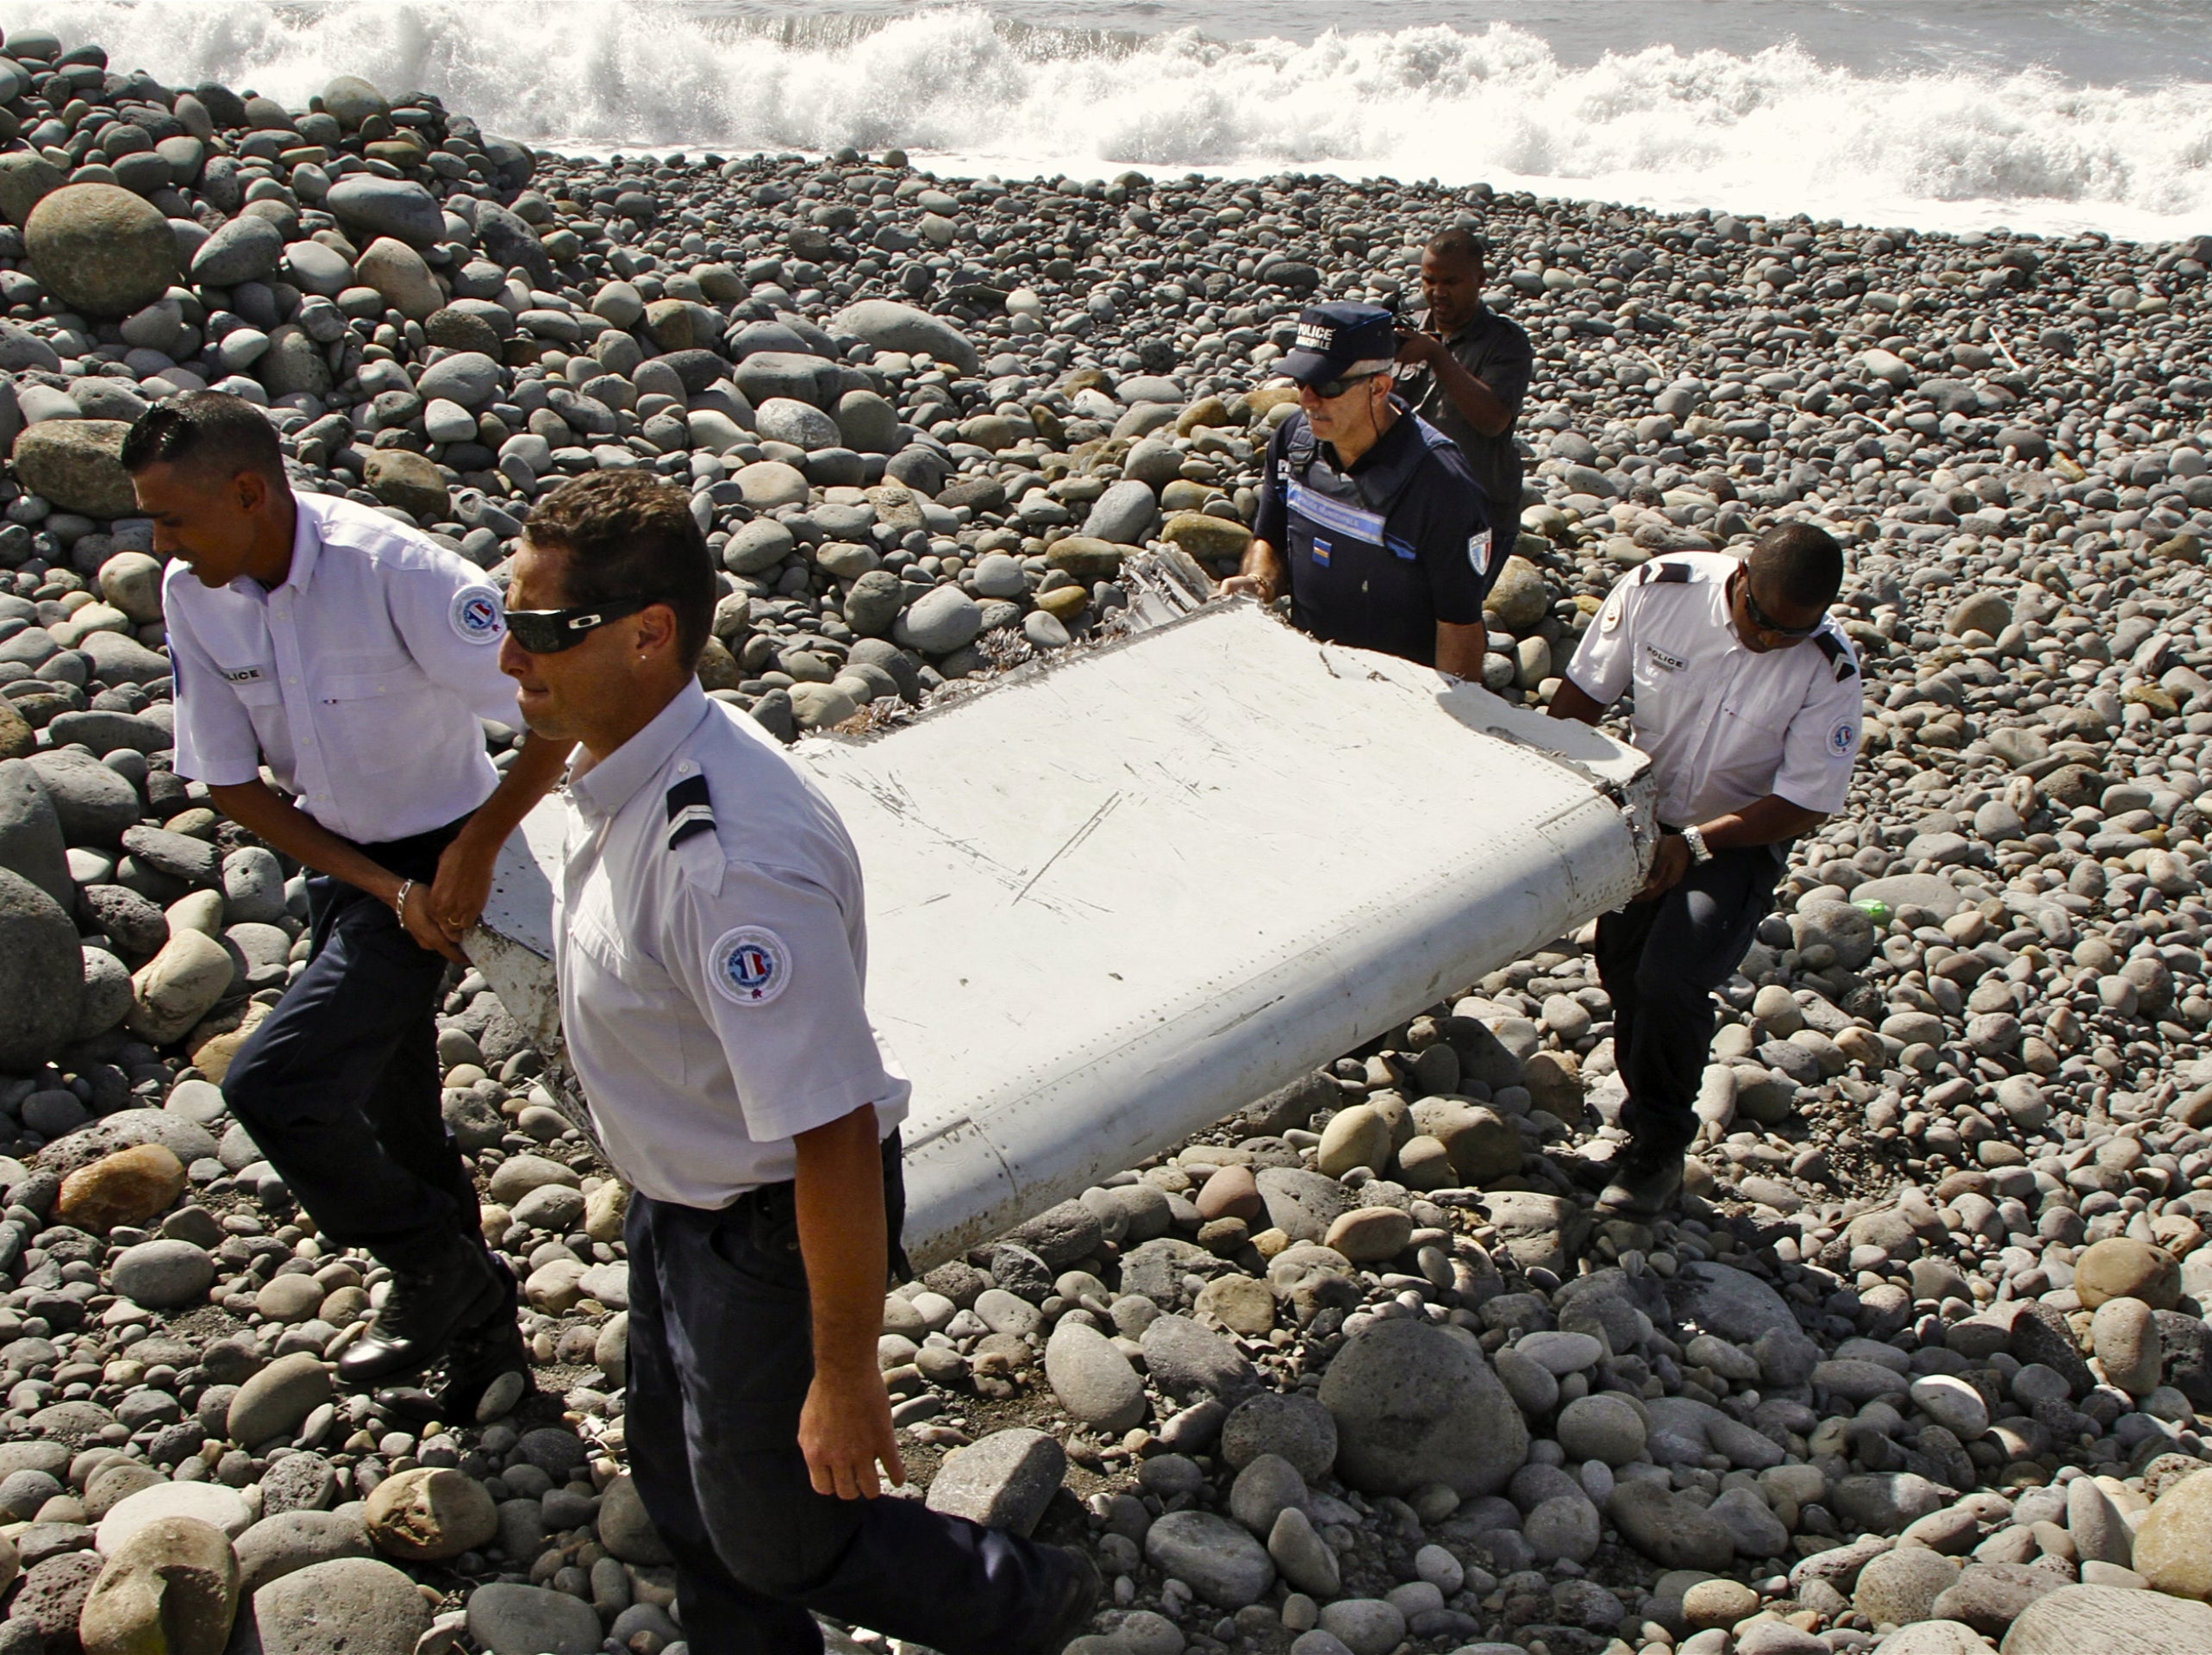 Se han recuperado varios fragmentos de los escombros del avión a lo largo de los años, algunos supuestos, otros confirmados como partes del vuelo MH370